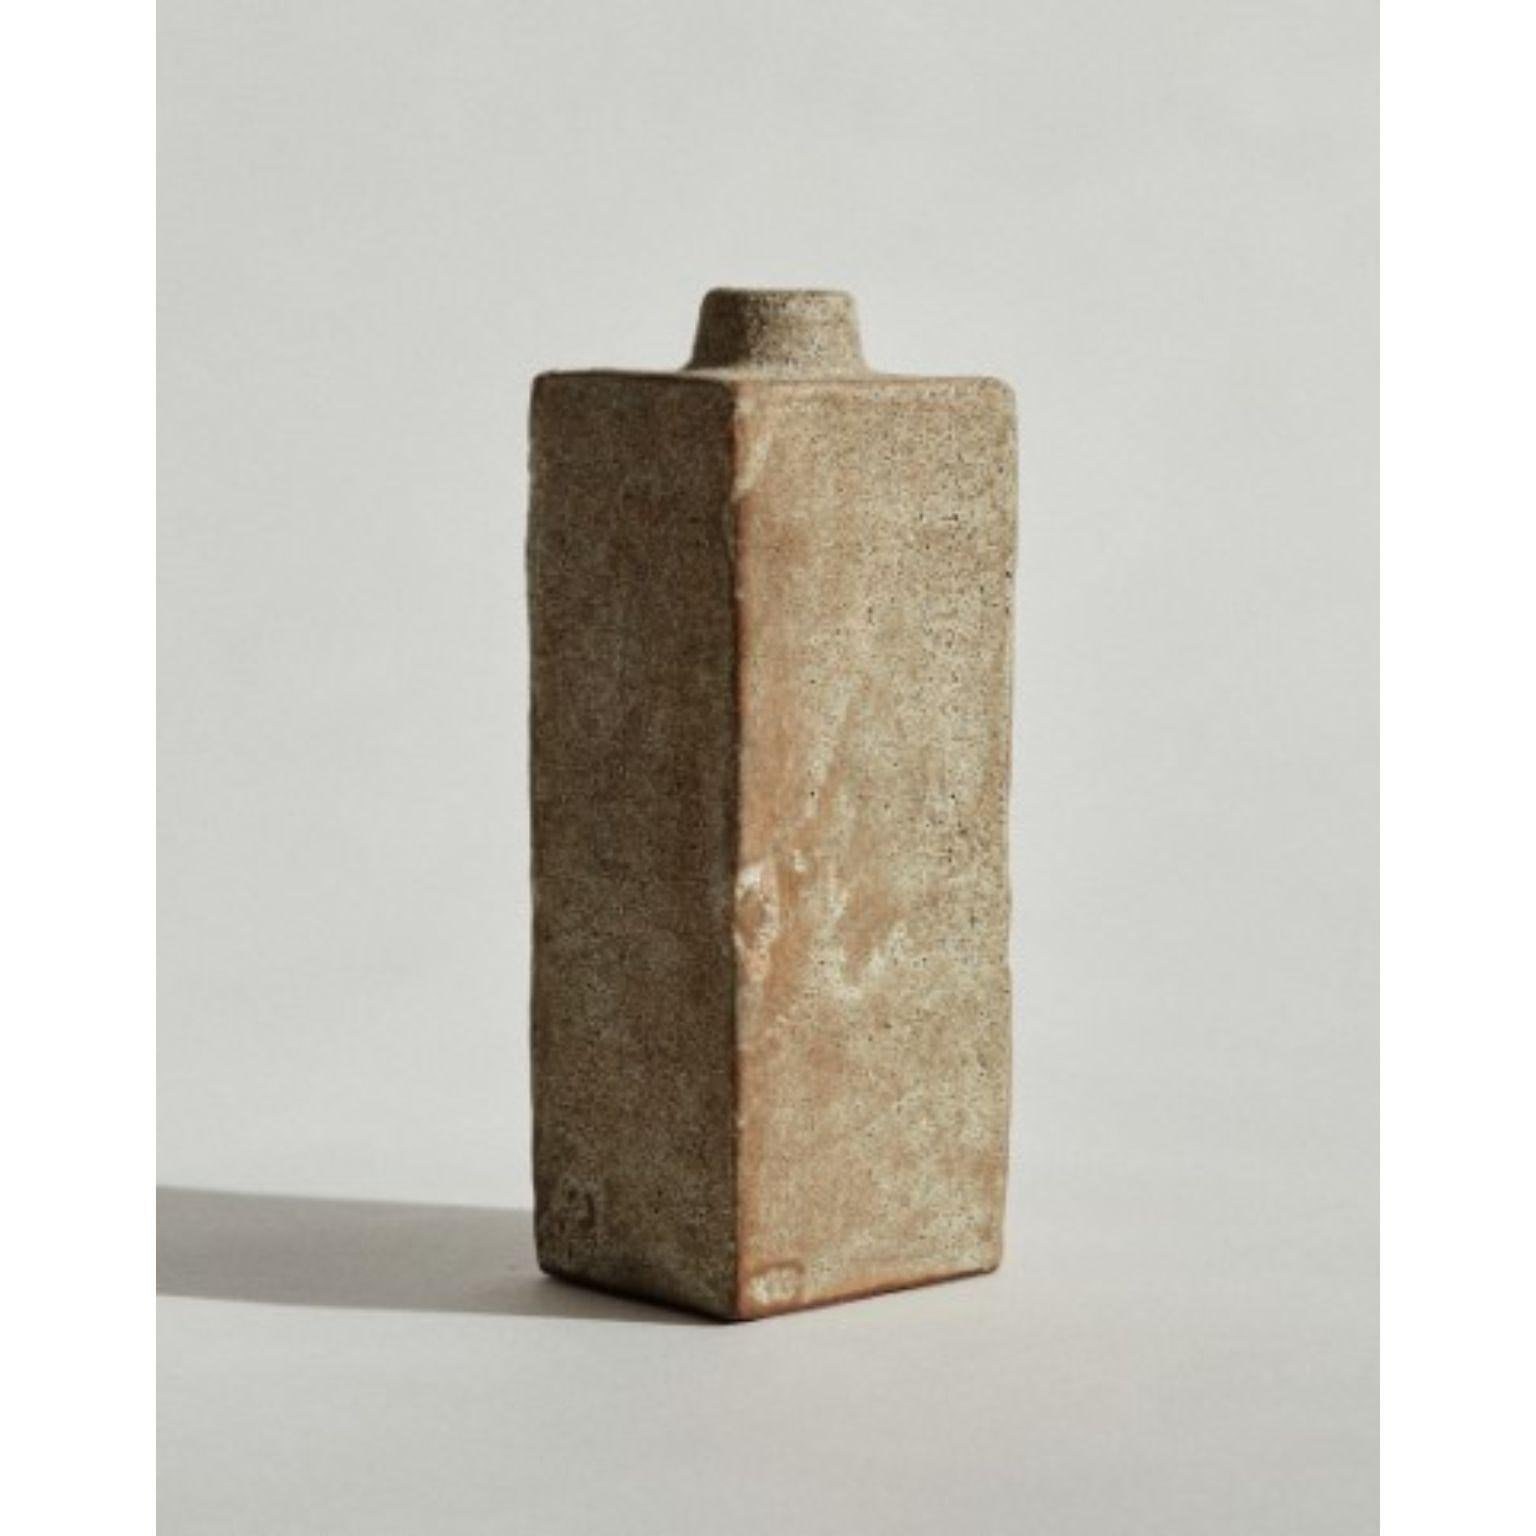 Flasche #2, handmodelliert von Marta Bonilla
Abmessungen: D8 x H20 cm
MATERIALIEN: Lehm, Glasur

Flasche 2 Stück Hand modelliert in rotem Ton und glasiert in vulkanischen beige Glasur.

Marta Bonilla entwirft und fertigt ihre Stücke in Barcelona, wo